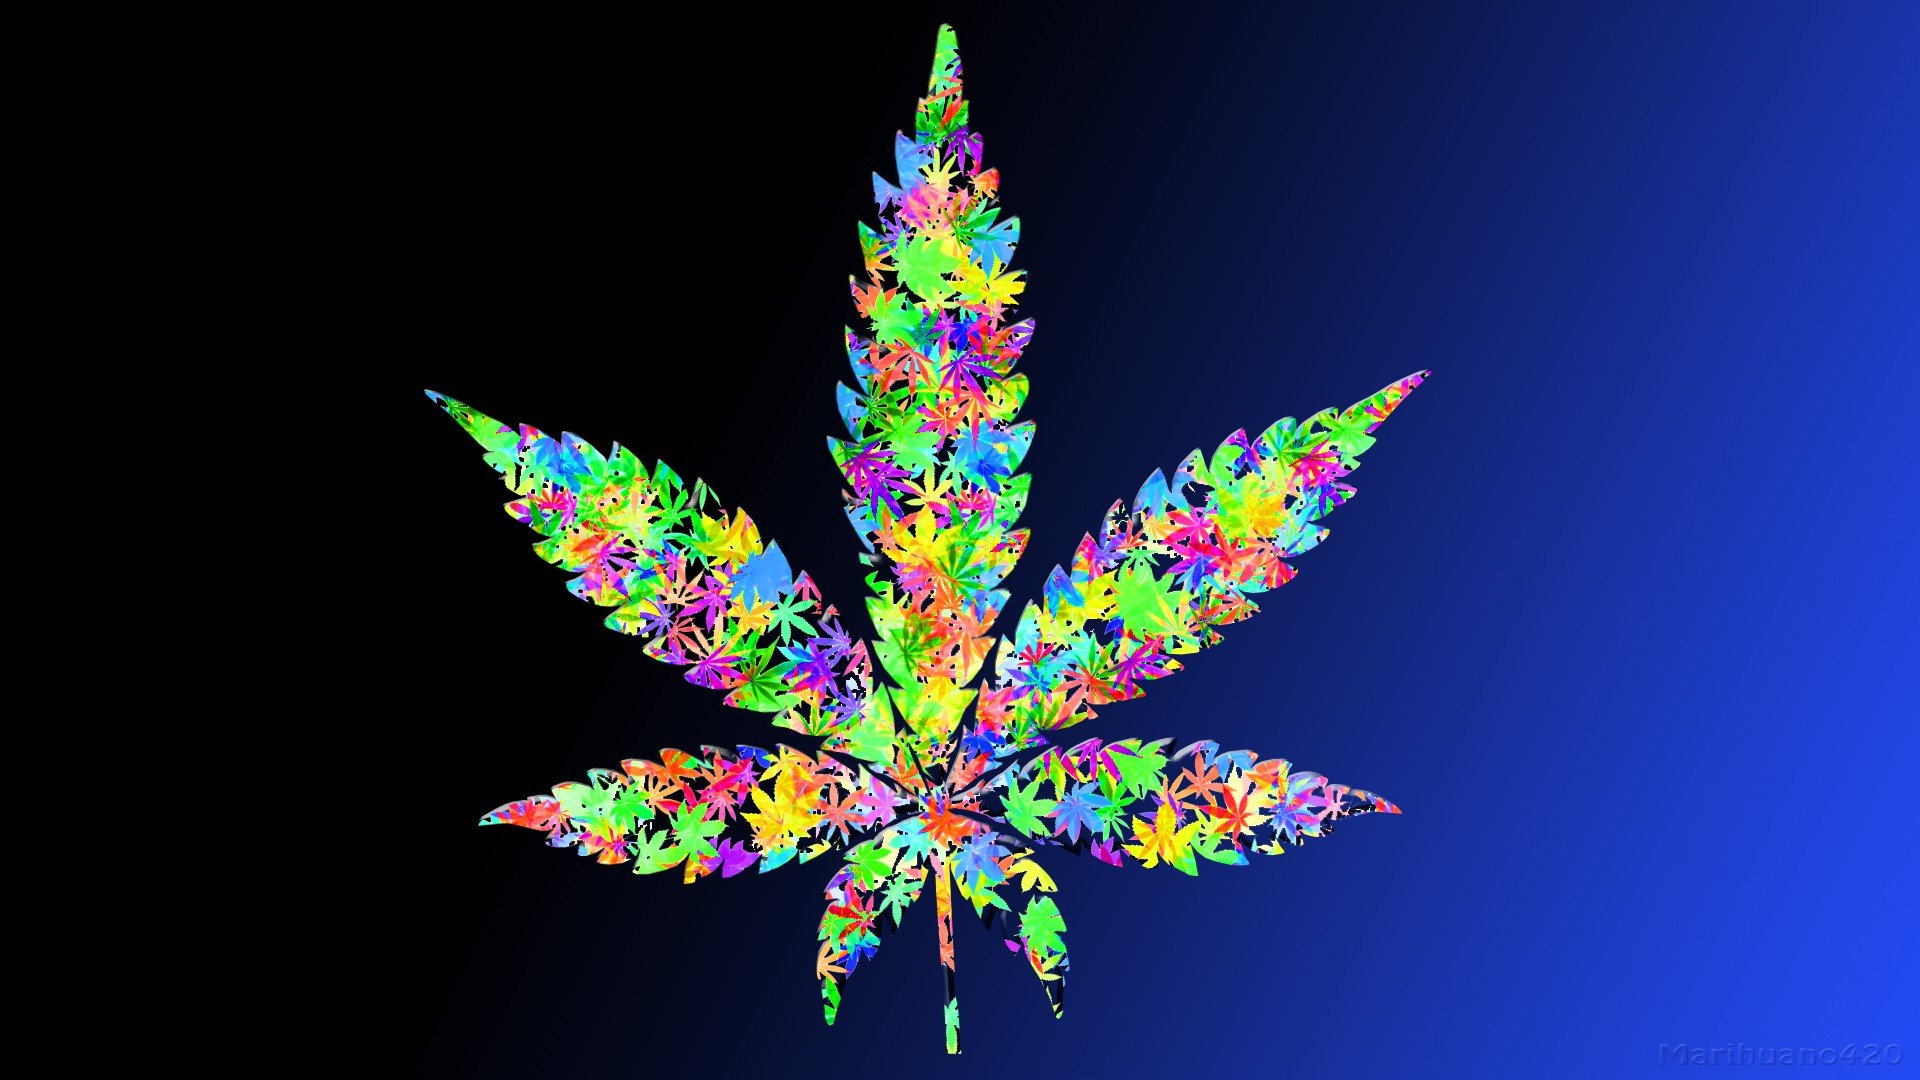 Free download Leaf drugs leaves marijuana weeds wallpaper 1920x1080